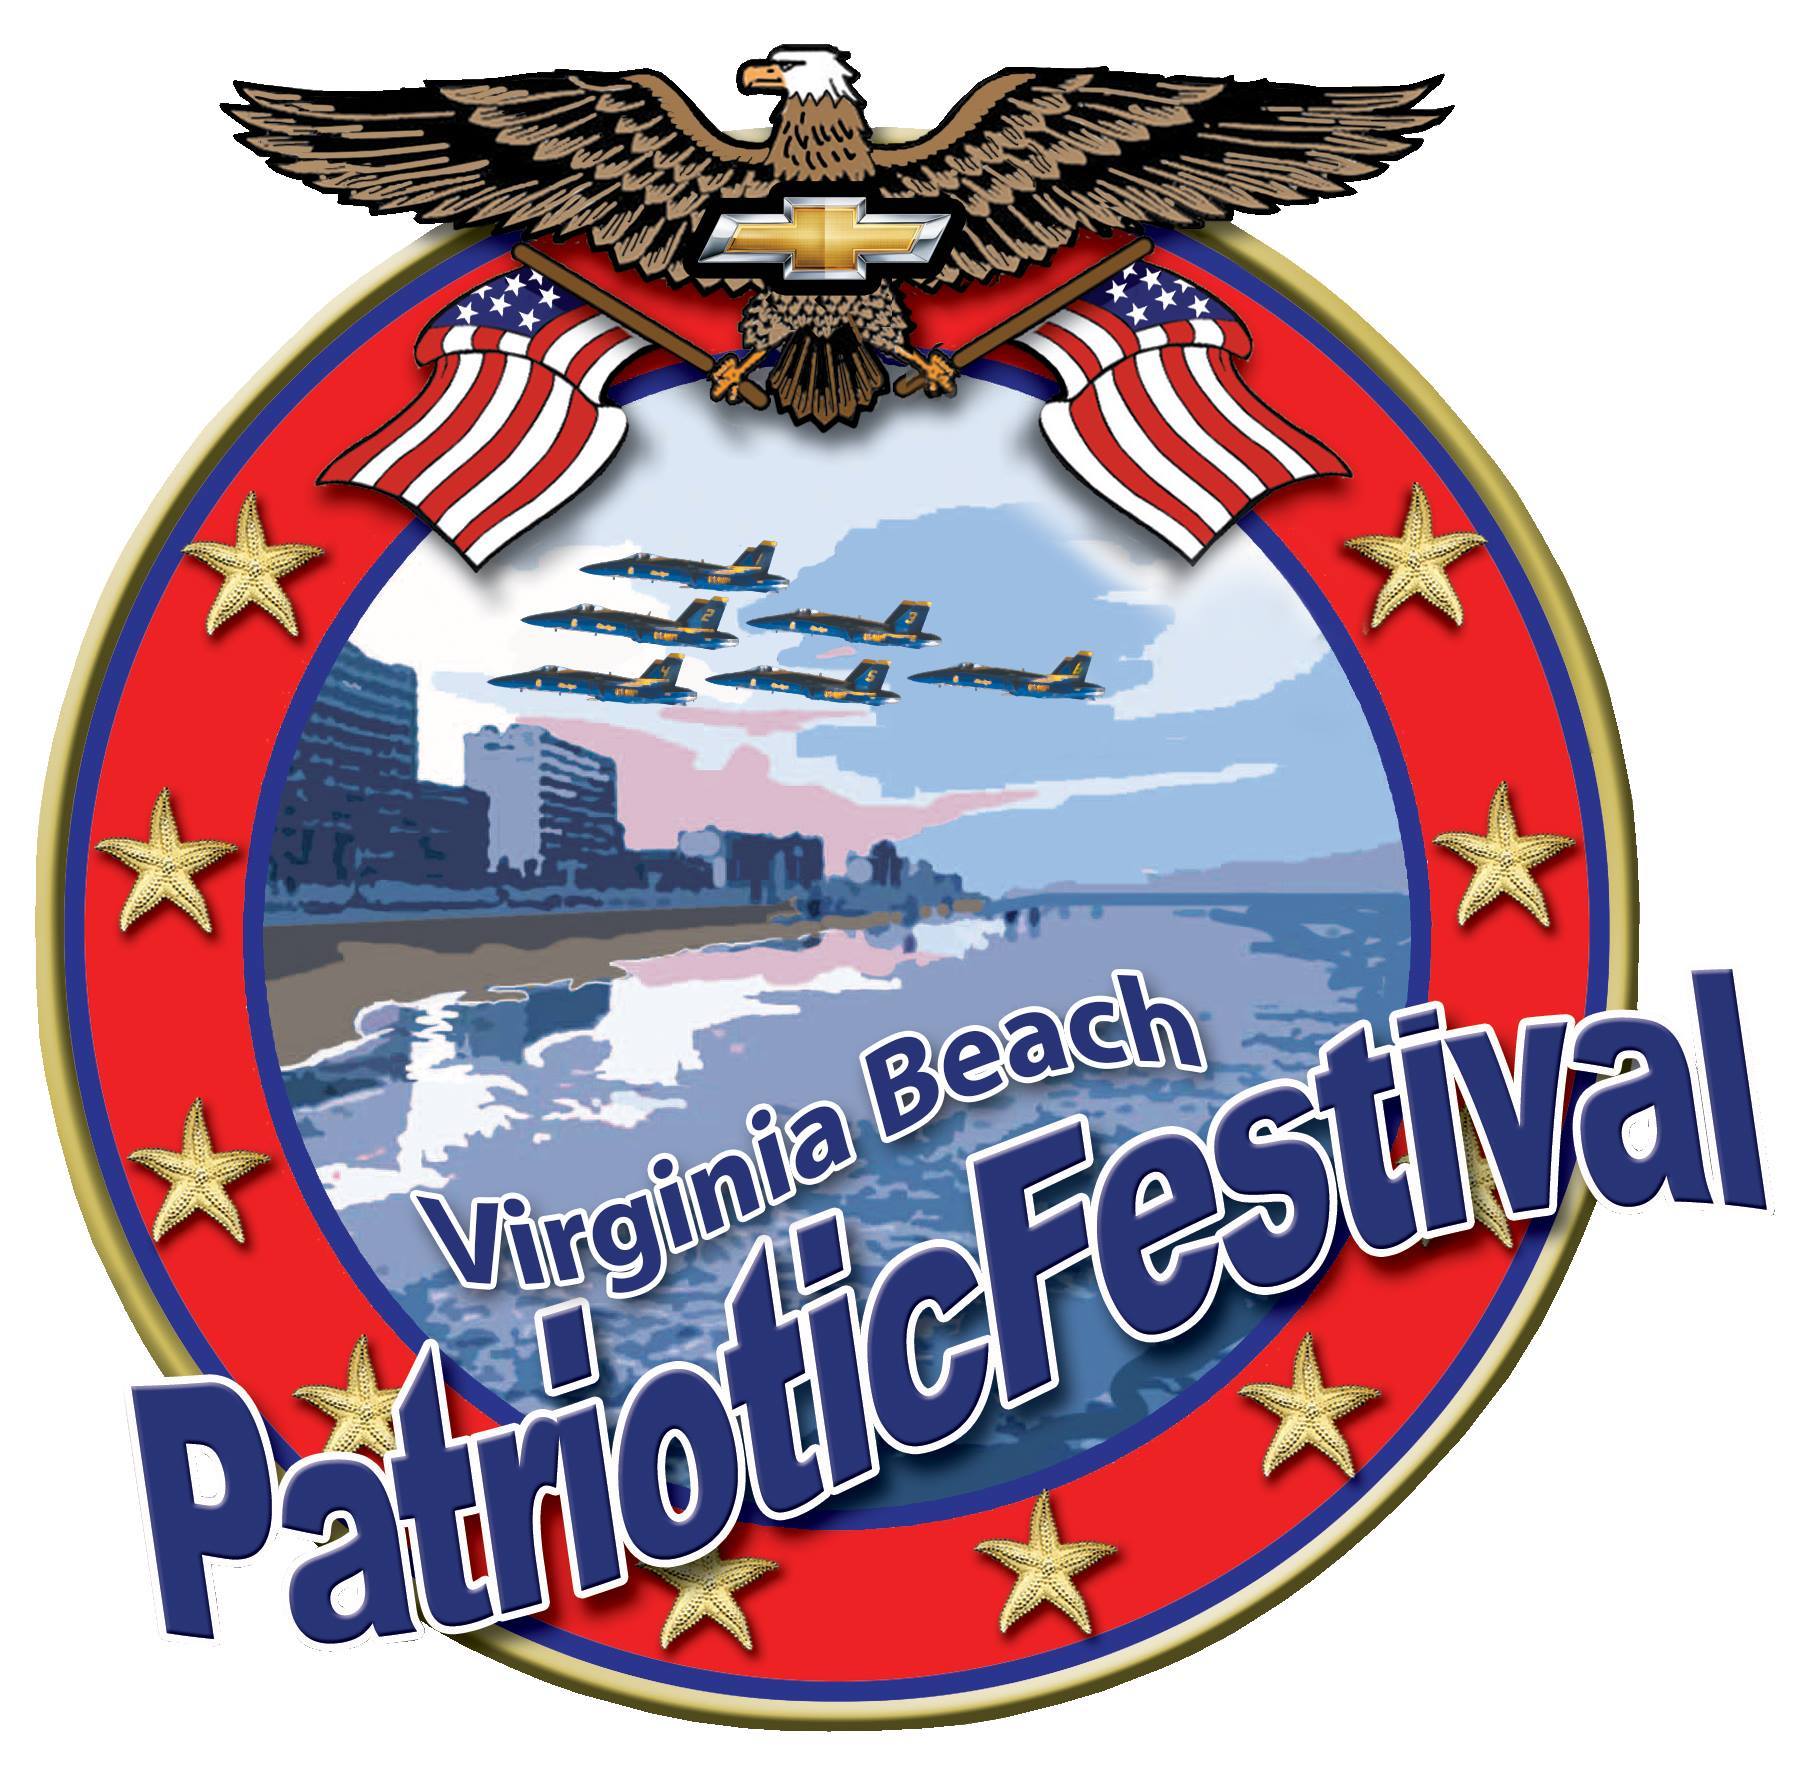 Virginia BEach Patriotic Festival